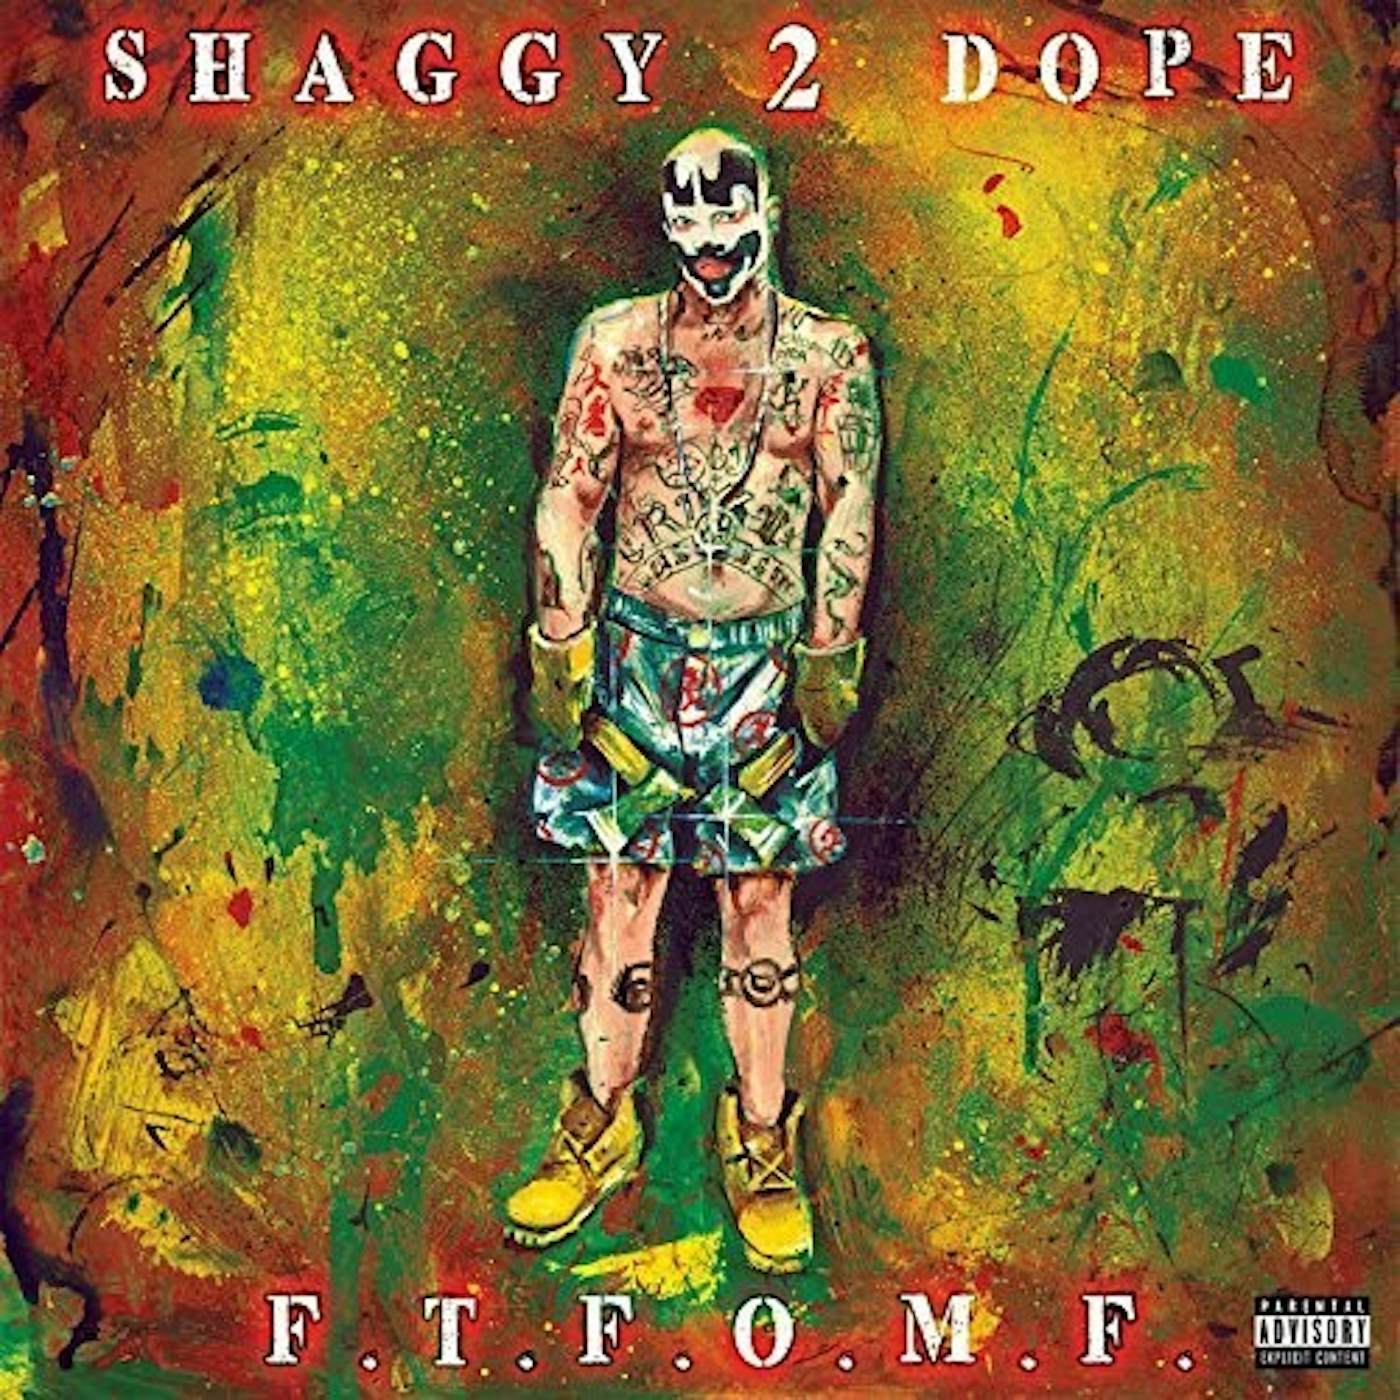 Shaggy 2 Dope F.T.F.O.M.F. Vinyl Record